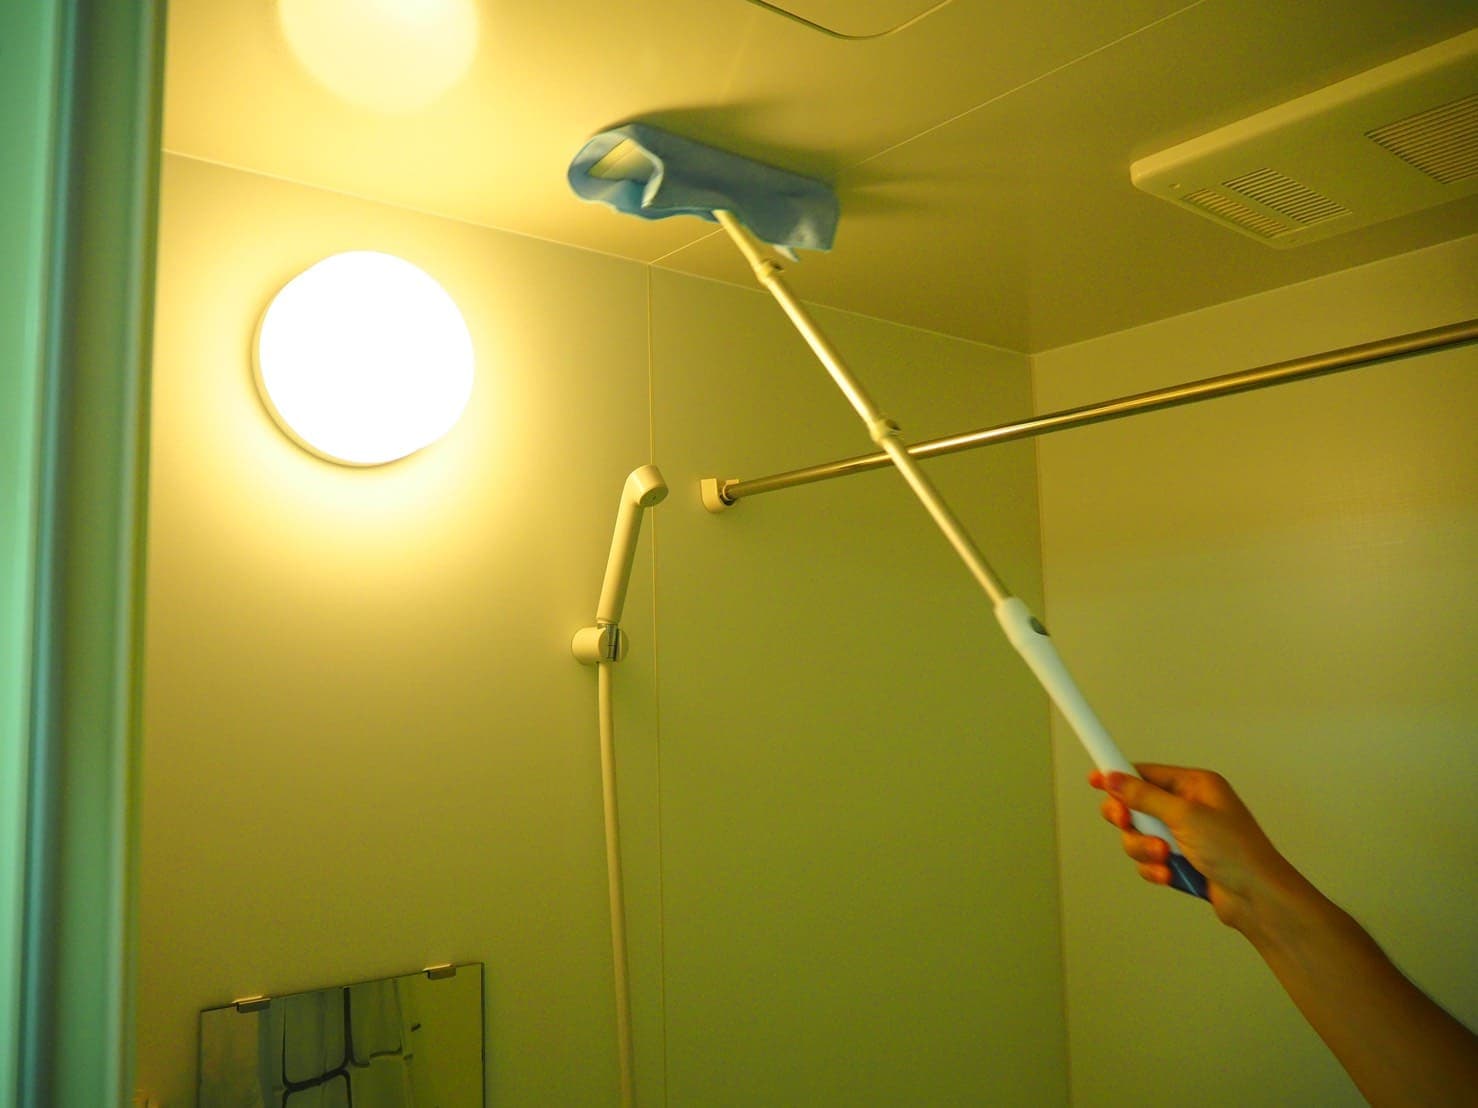 プロ直伝 浴室の天井にカビが 生えてしまったカビを徹底的に取り除く掃除方法 カジタク イオングループ